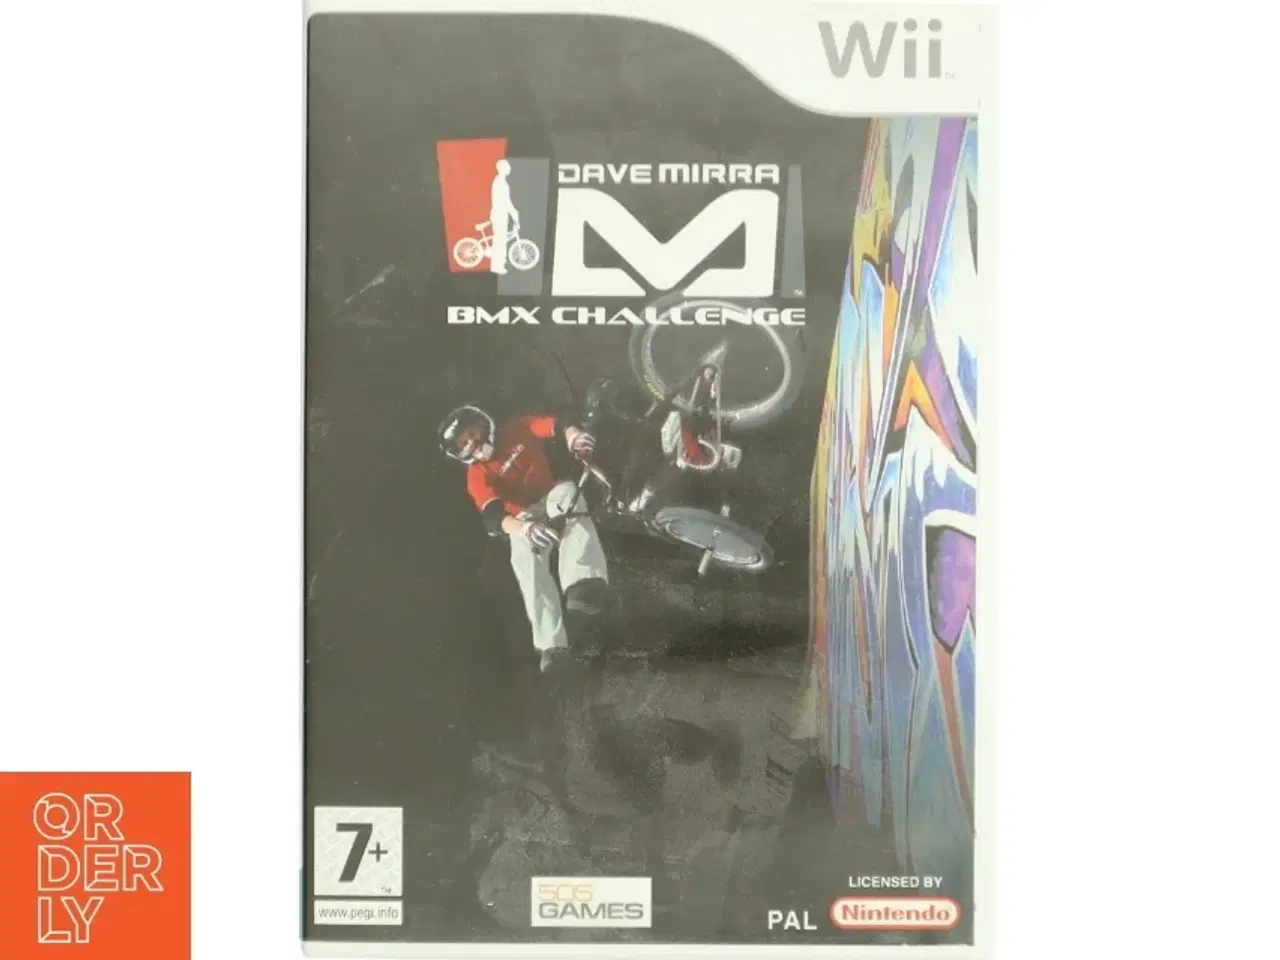 Billede 1 - Dave Mirra BMX Challenge Wii spil fra Nintendo